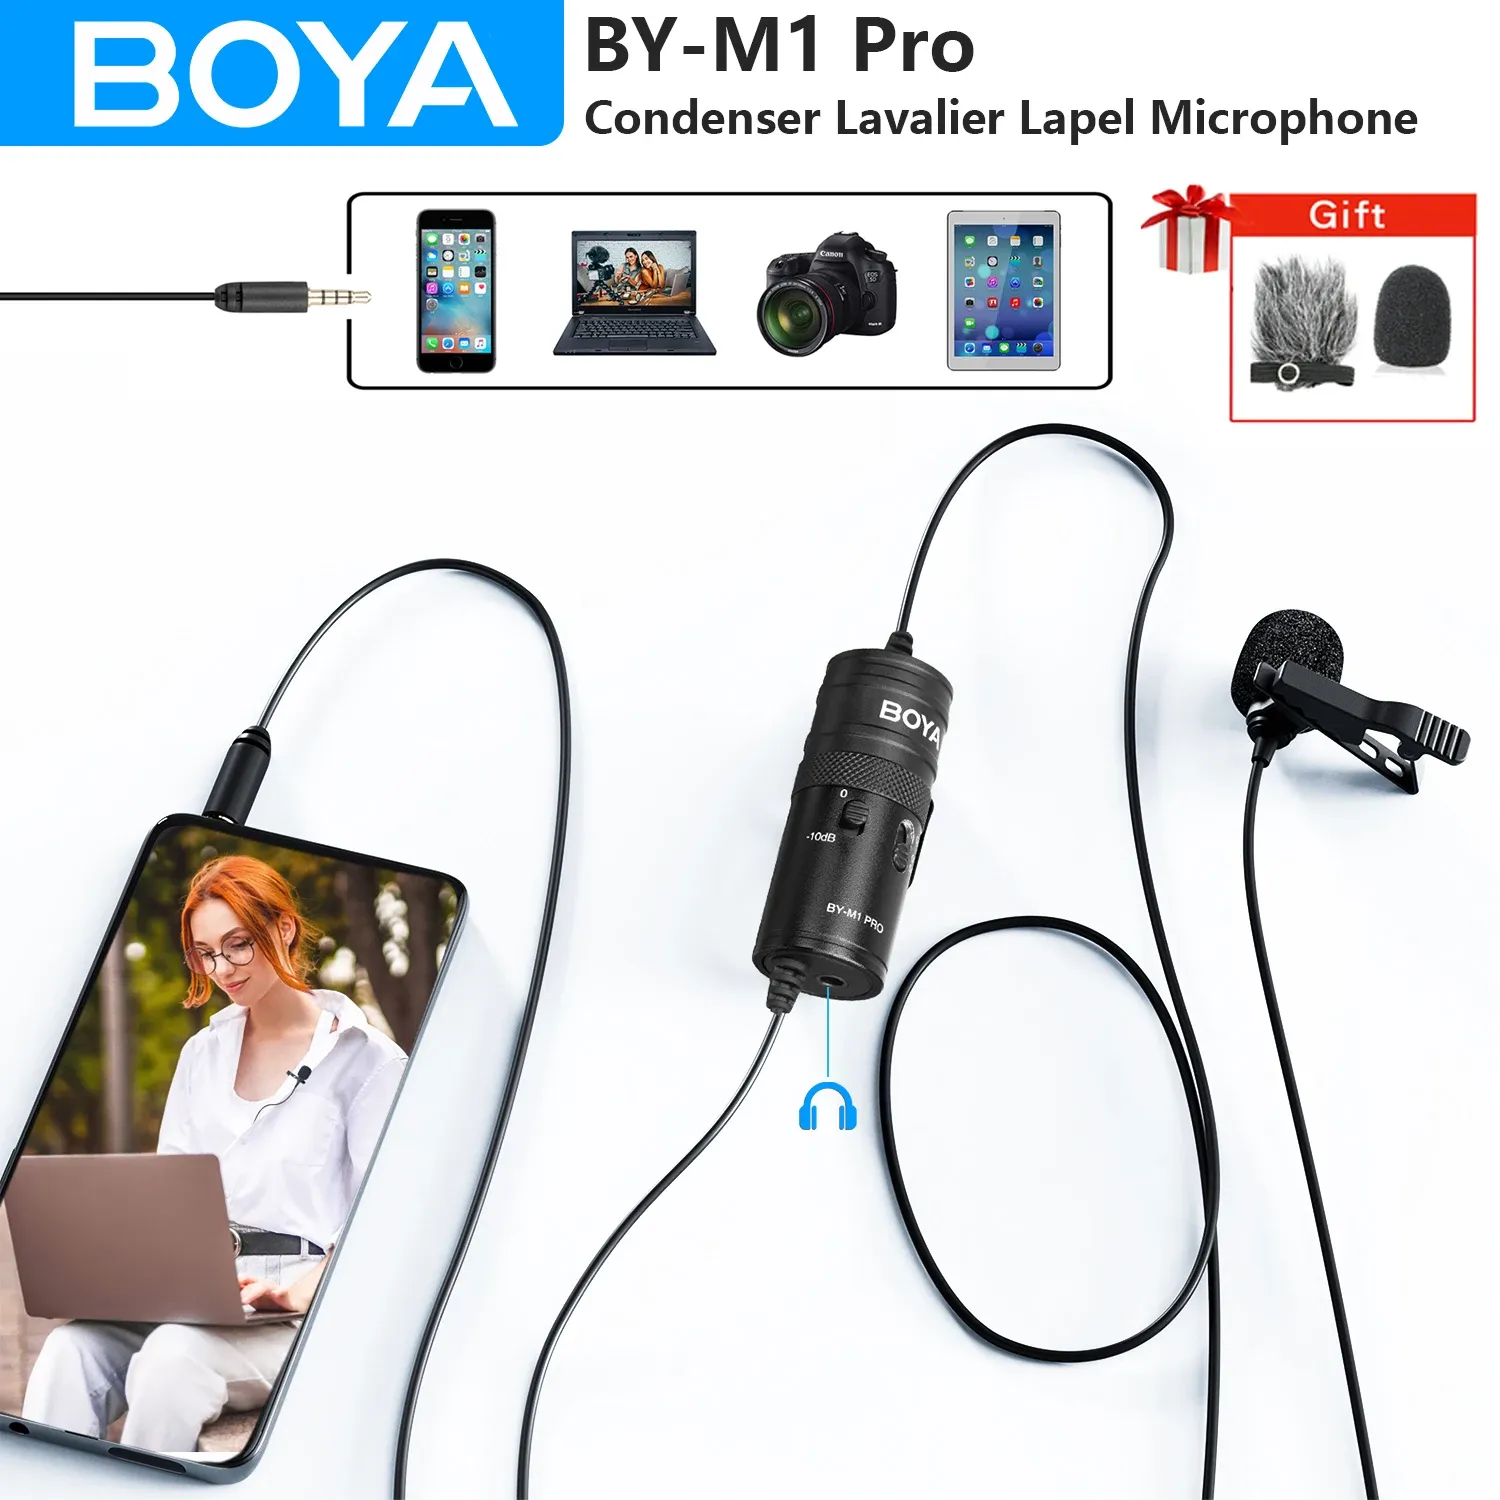 Штативы Boya Bym1 Pro Lavalier Lapel Microphone для iPhone Android DSLR Cameras PC ноутбук компьютер потоковой ряд youtube записывает микрофон микрофон